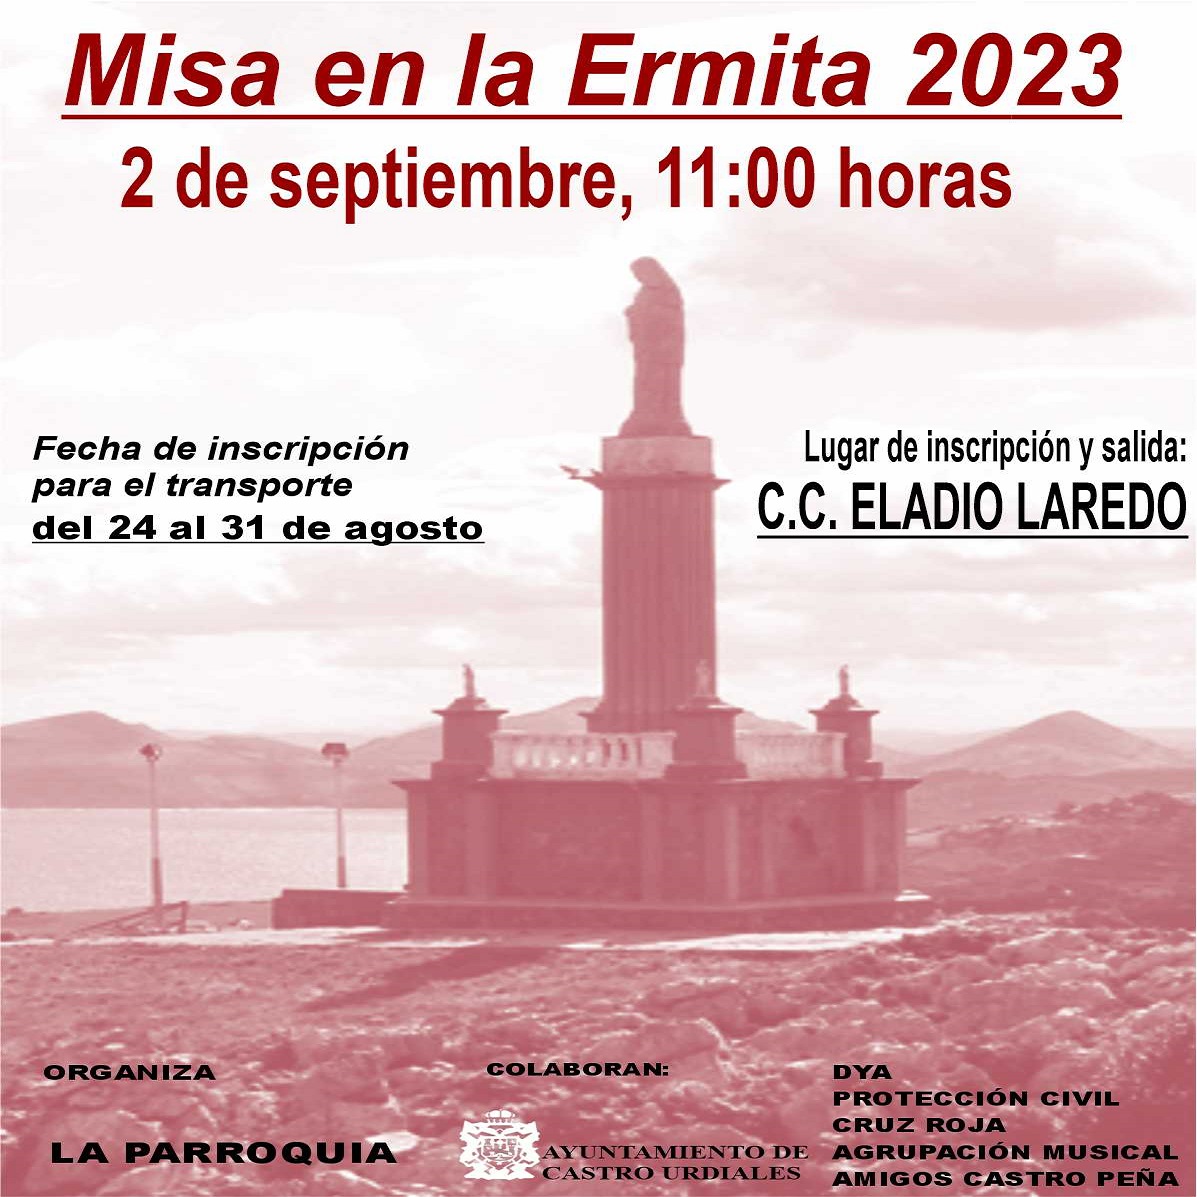 Misa en la Ermita 2023